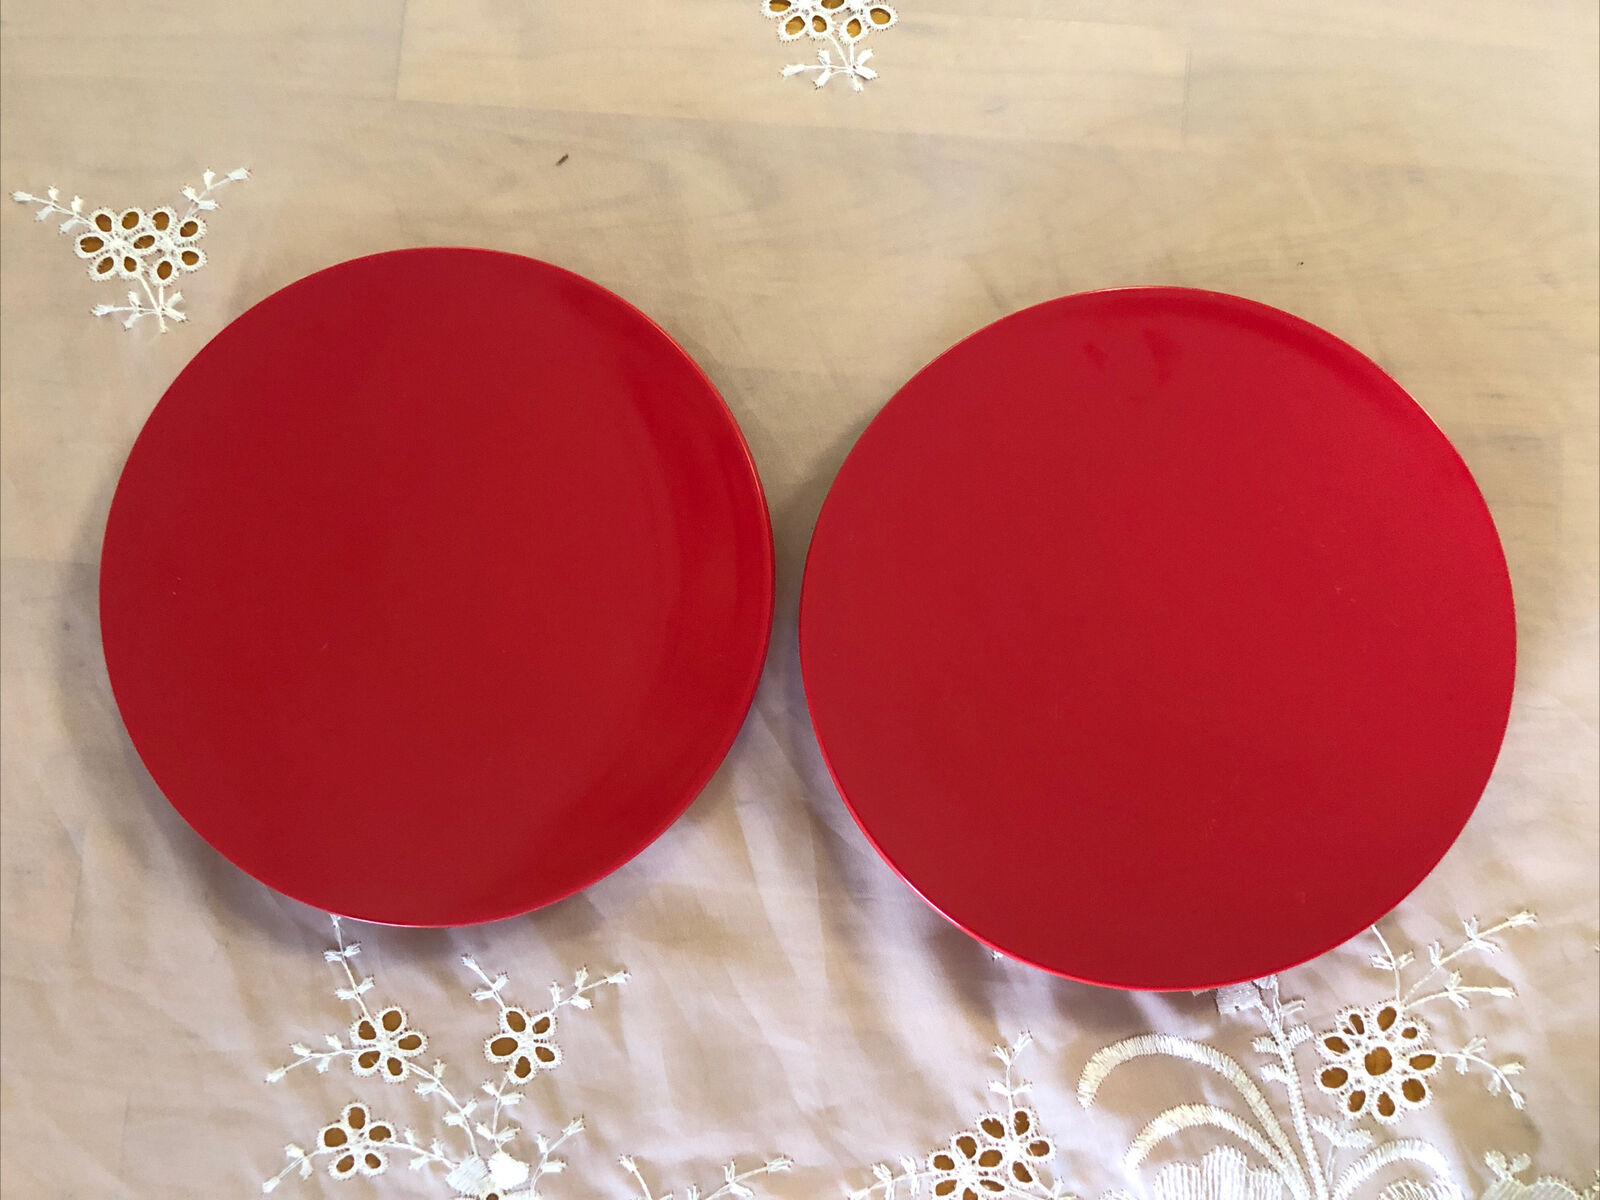 Vintage COPCO Red Melamine Plastic Set of 2 Salad Plates, 8” Salad Plates 1985